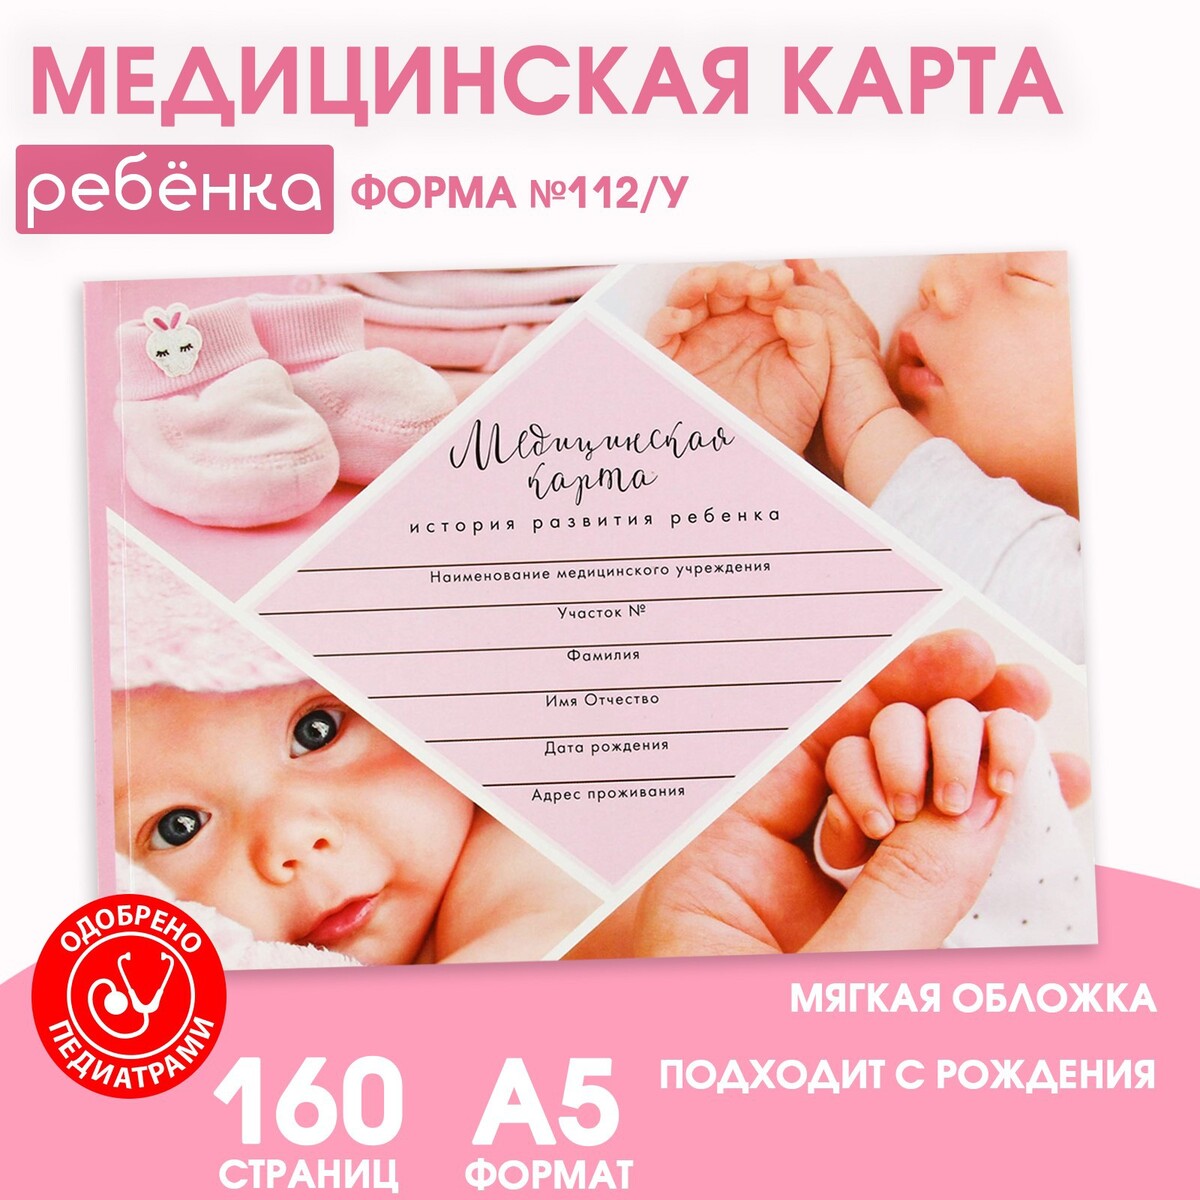 Медицинская карта ребенка форма №112/у набор для безопасности ребенка 18 штук